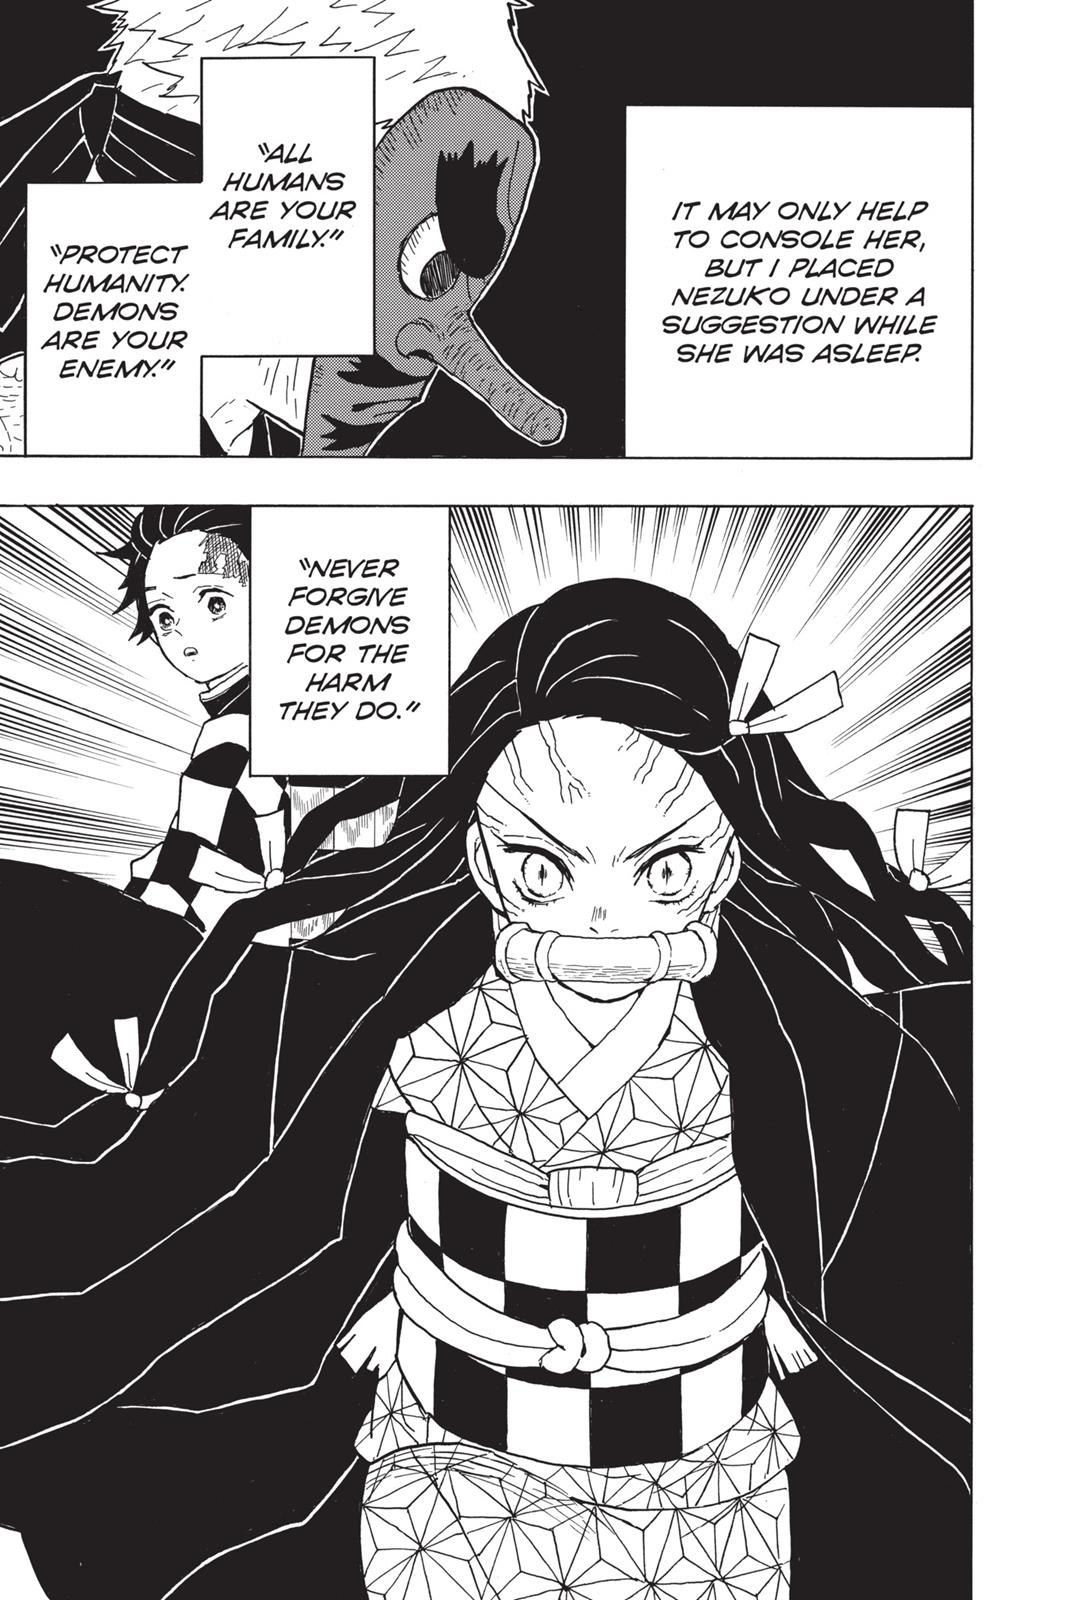 Demon Slayer Manga Manga Chapter - 11 - image 18